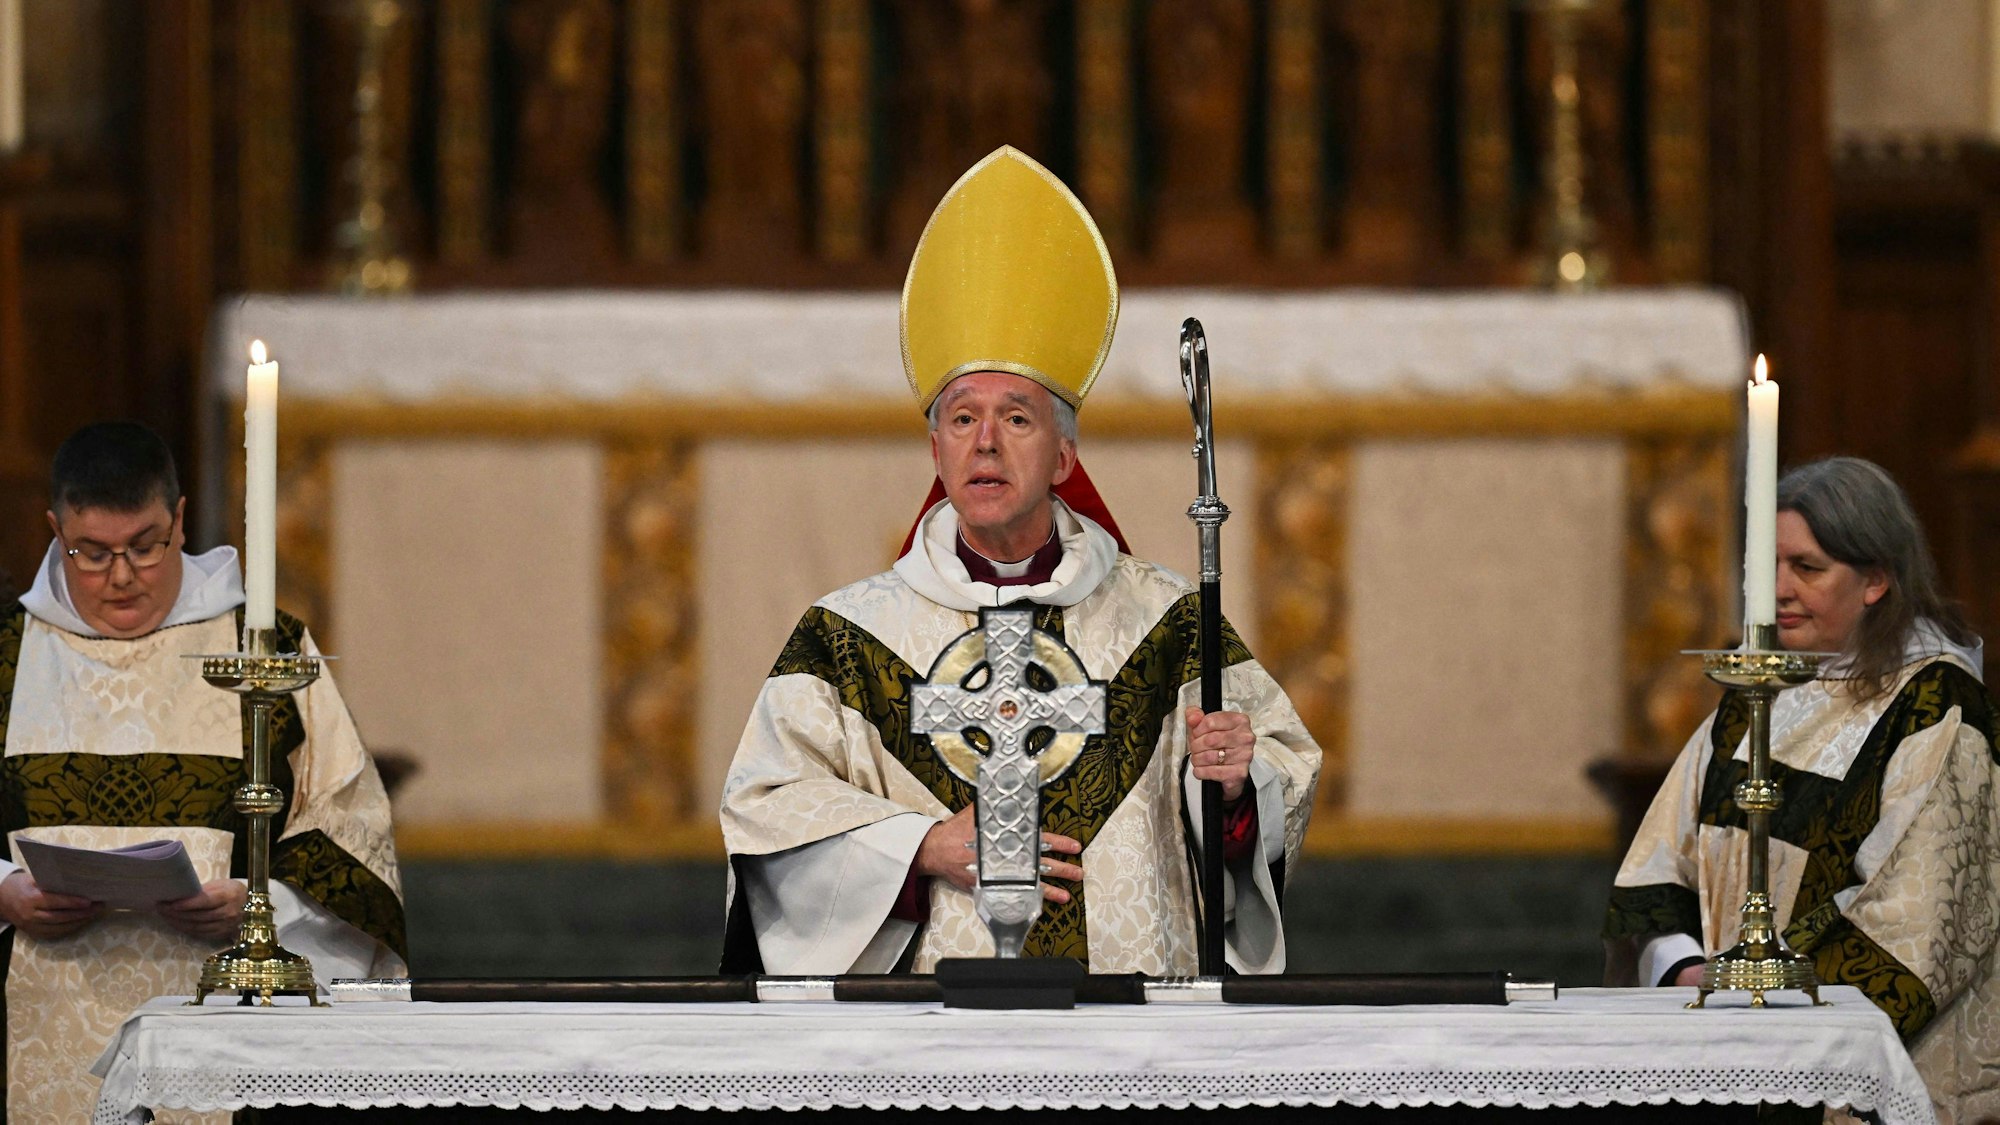 Andrew John, Erzbischof von Wales, steht hinter dem „Cross of Wales“ zusammen mit zwei anderen kirchlichen Dienern.